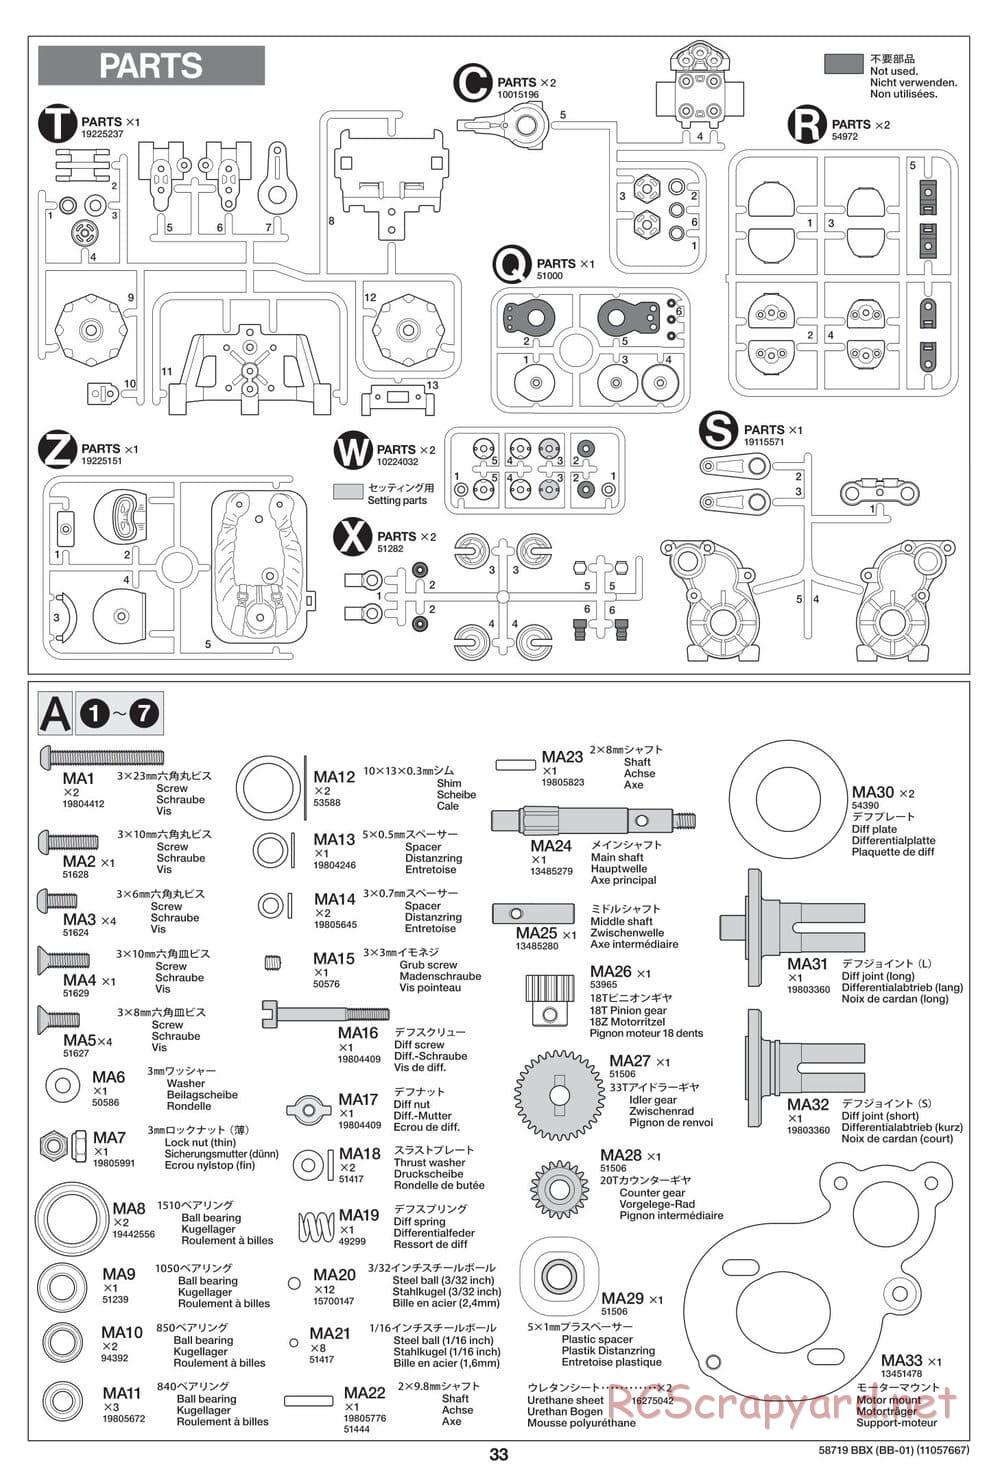 Tamiya - BBX - BB-01 Chassis - Manual - Page 33